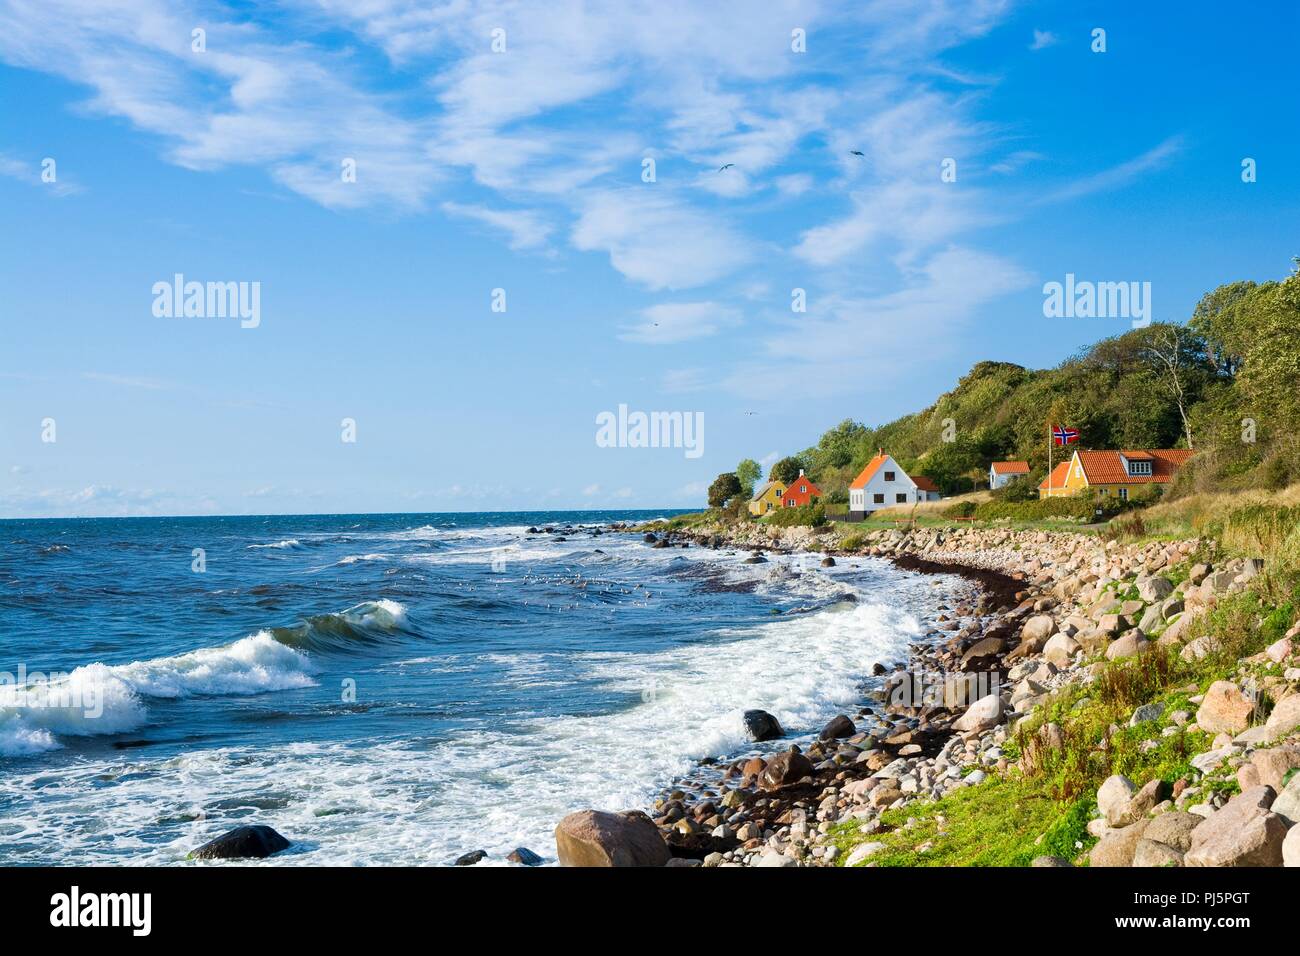 View of finishing hamlet on west coast of Bornholm island - Helligpeder, Denmark Stock Photo